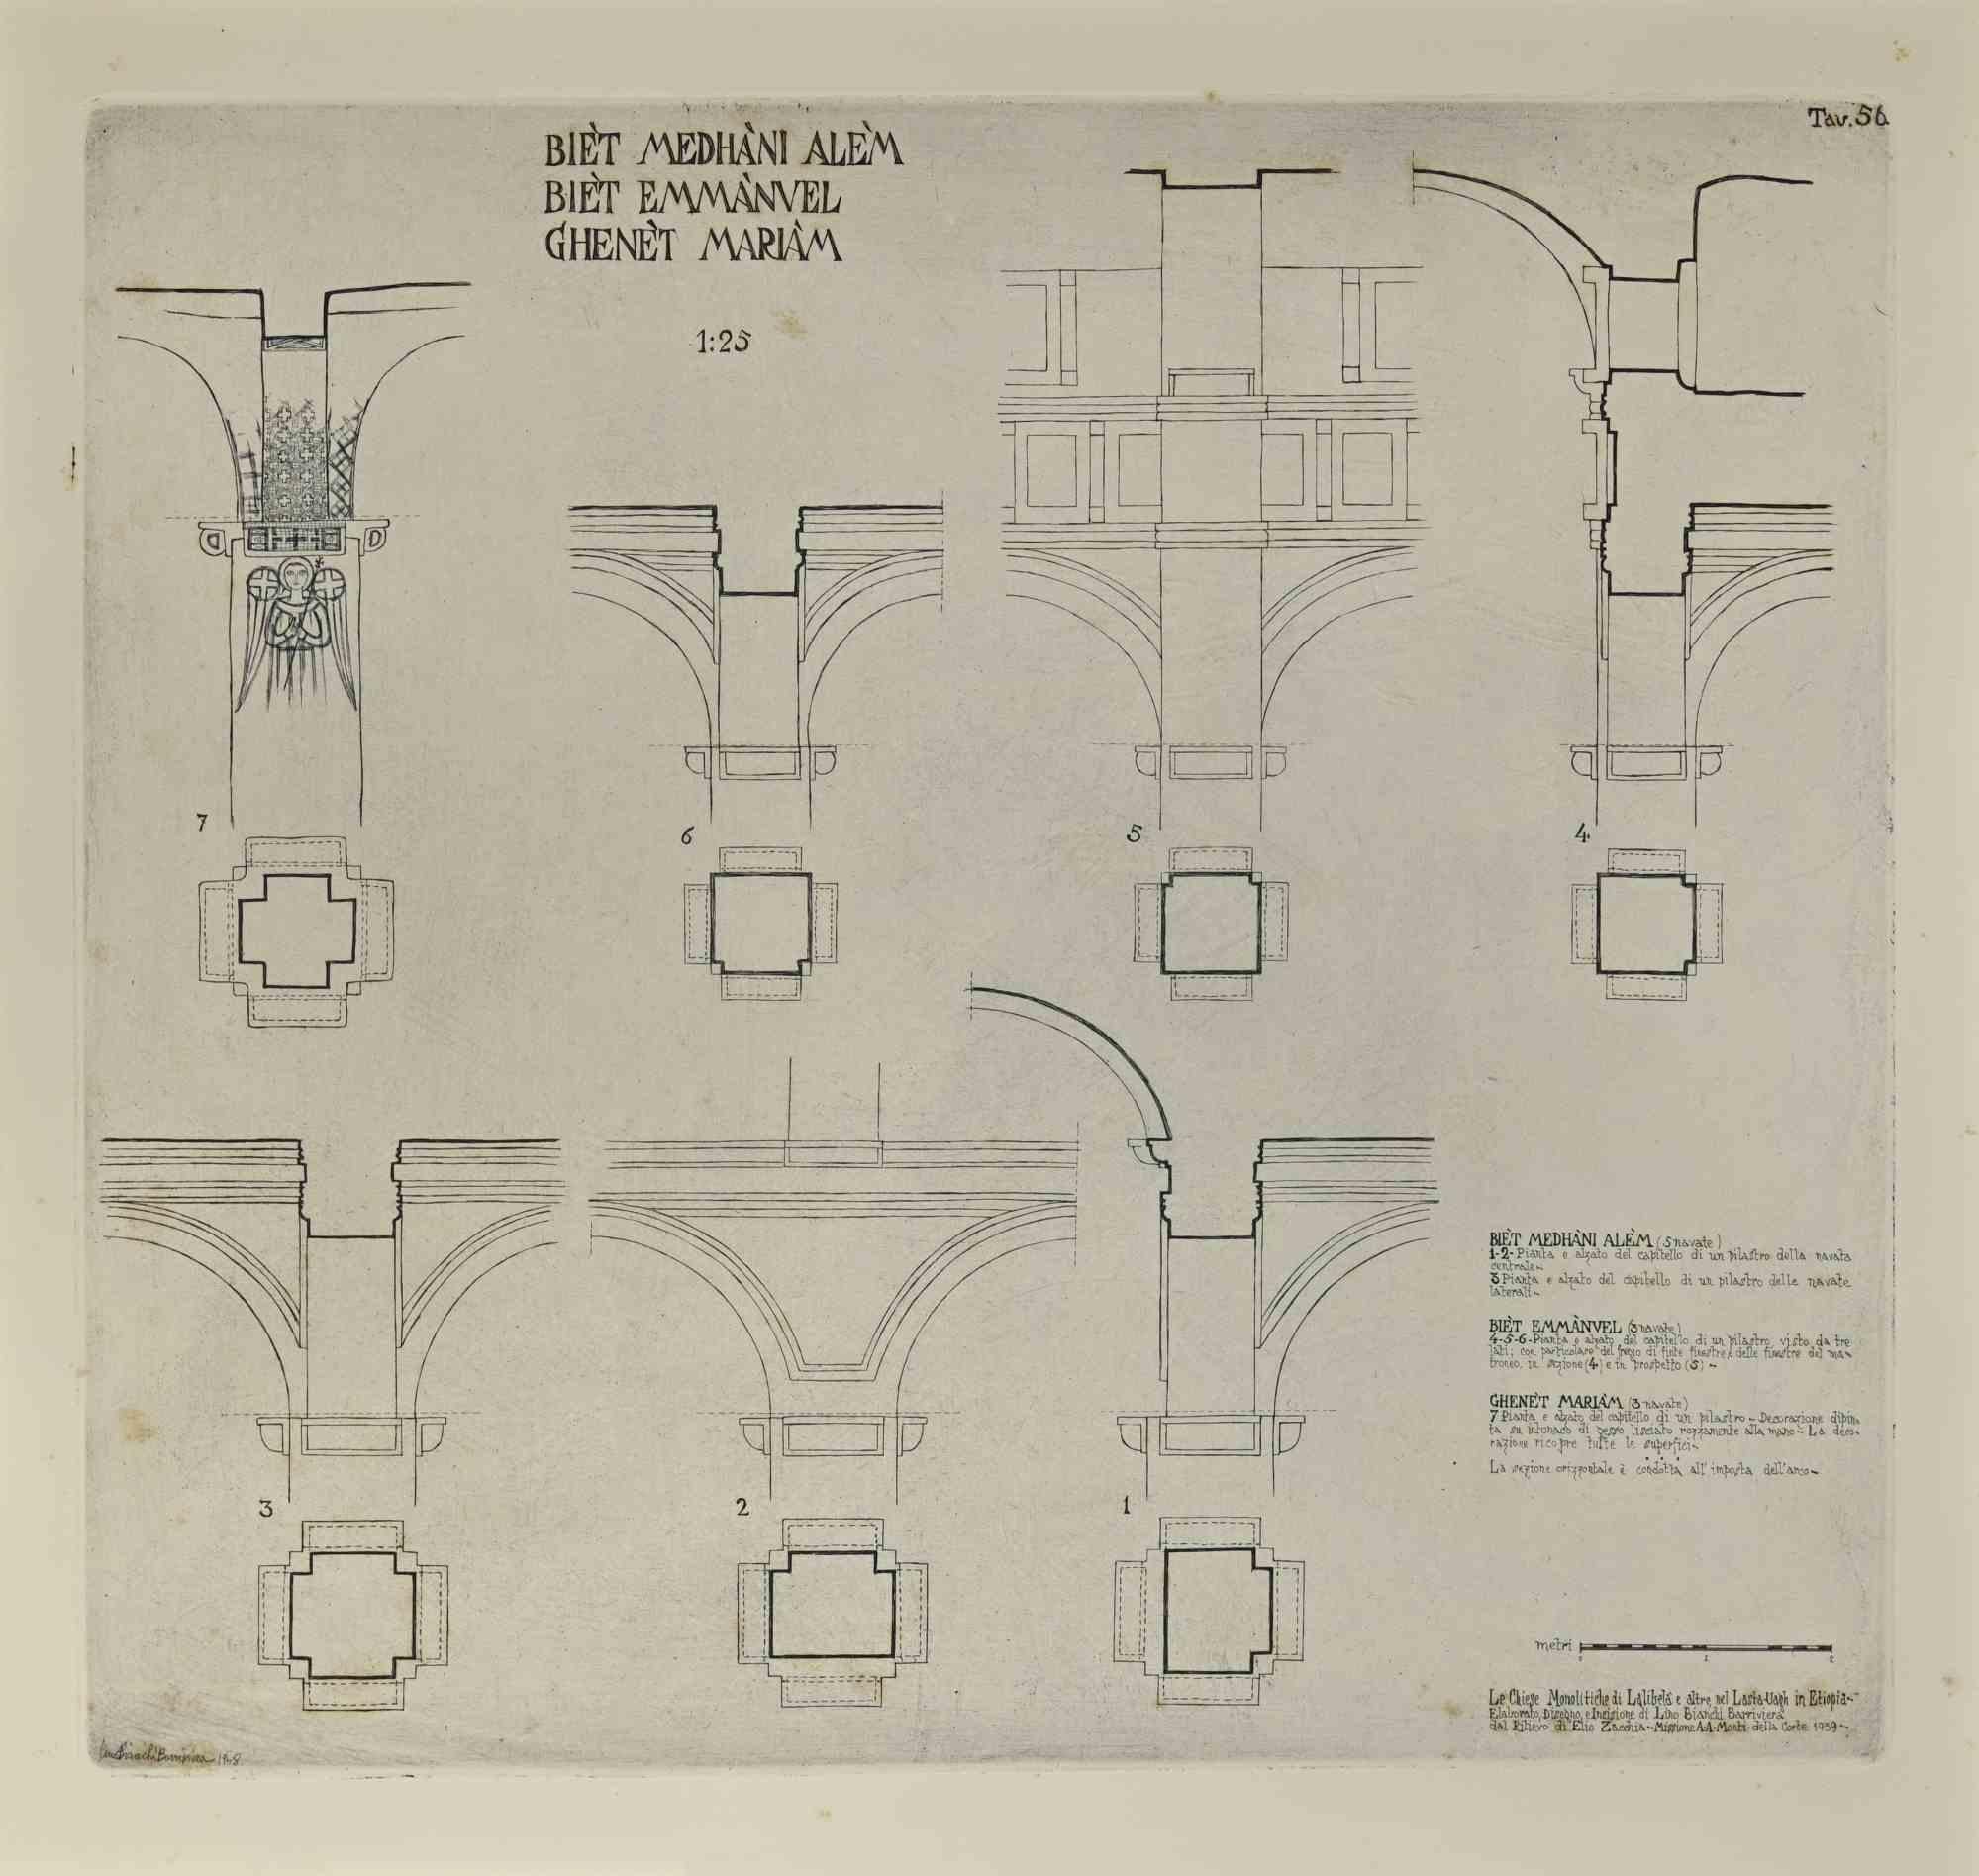 Bet Medhane Alem ist ein modernes Kunstwerk von Lino Bianchi Barriviera aus dem Jahr 1948.

Schwarze und weiße Radierung.

Signiert und datiert auf der Platte.

Tafel n.56 (wie am oberen Rand angegeben).

Das Kunstwerk stammt aus der Serie "Die